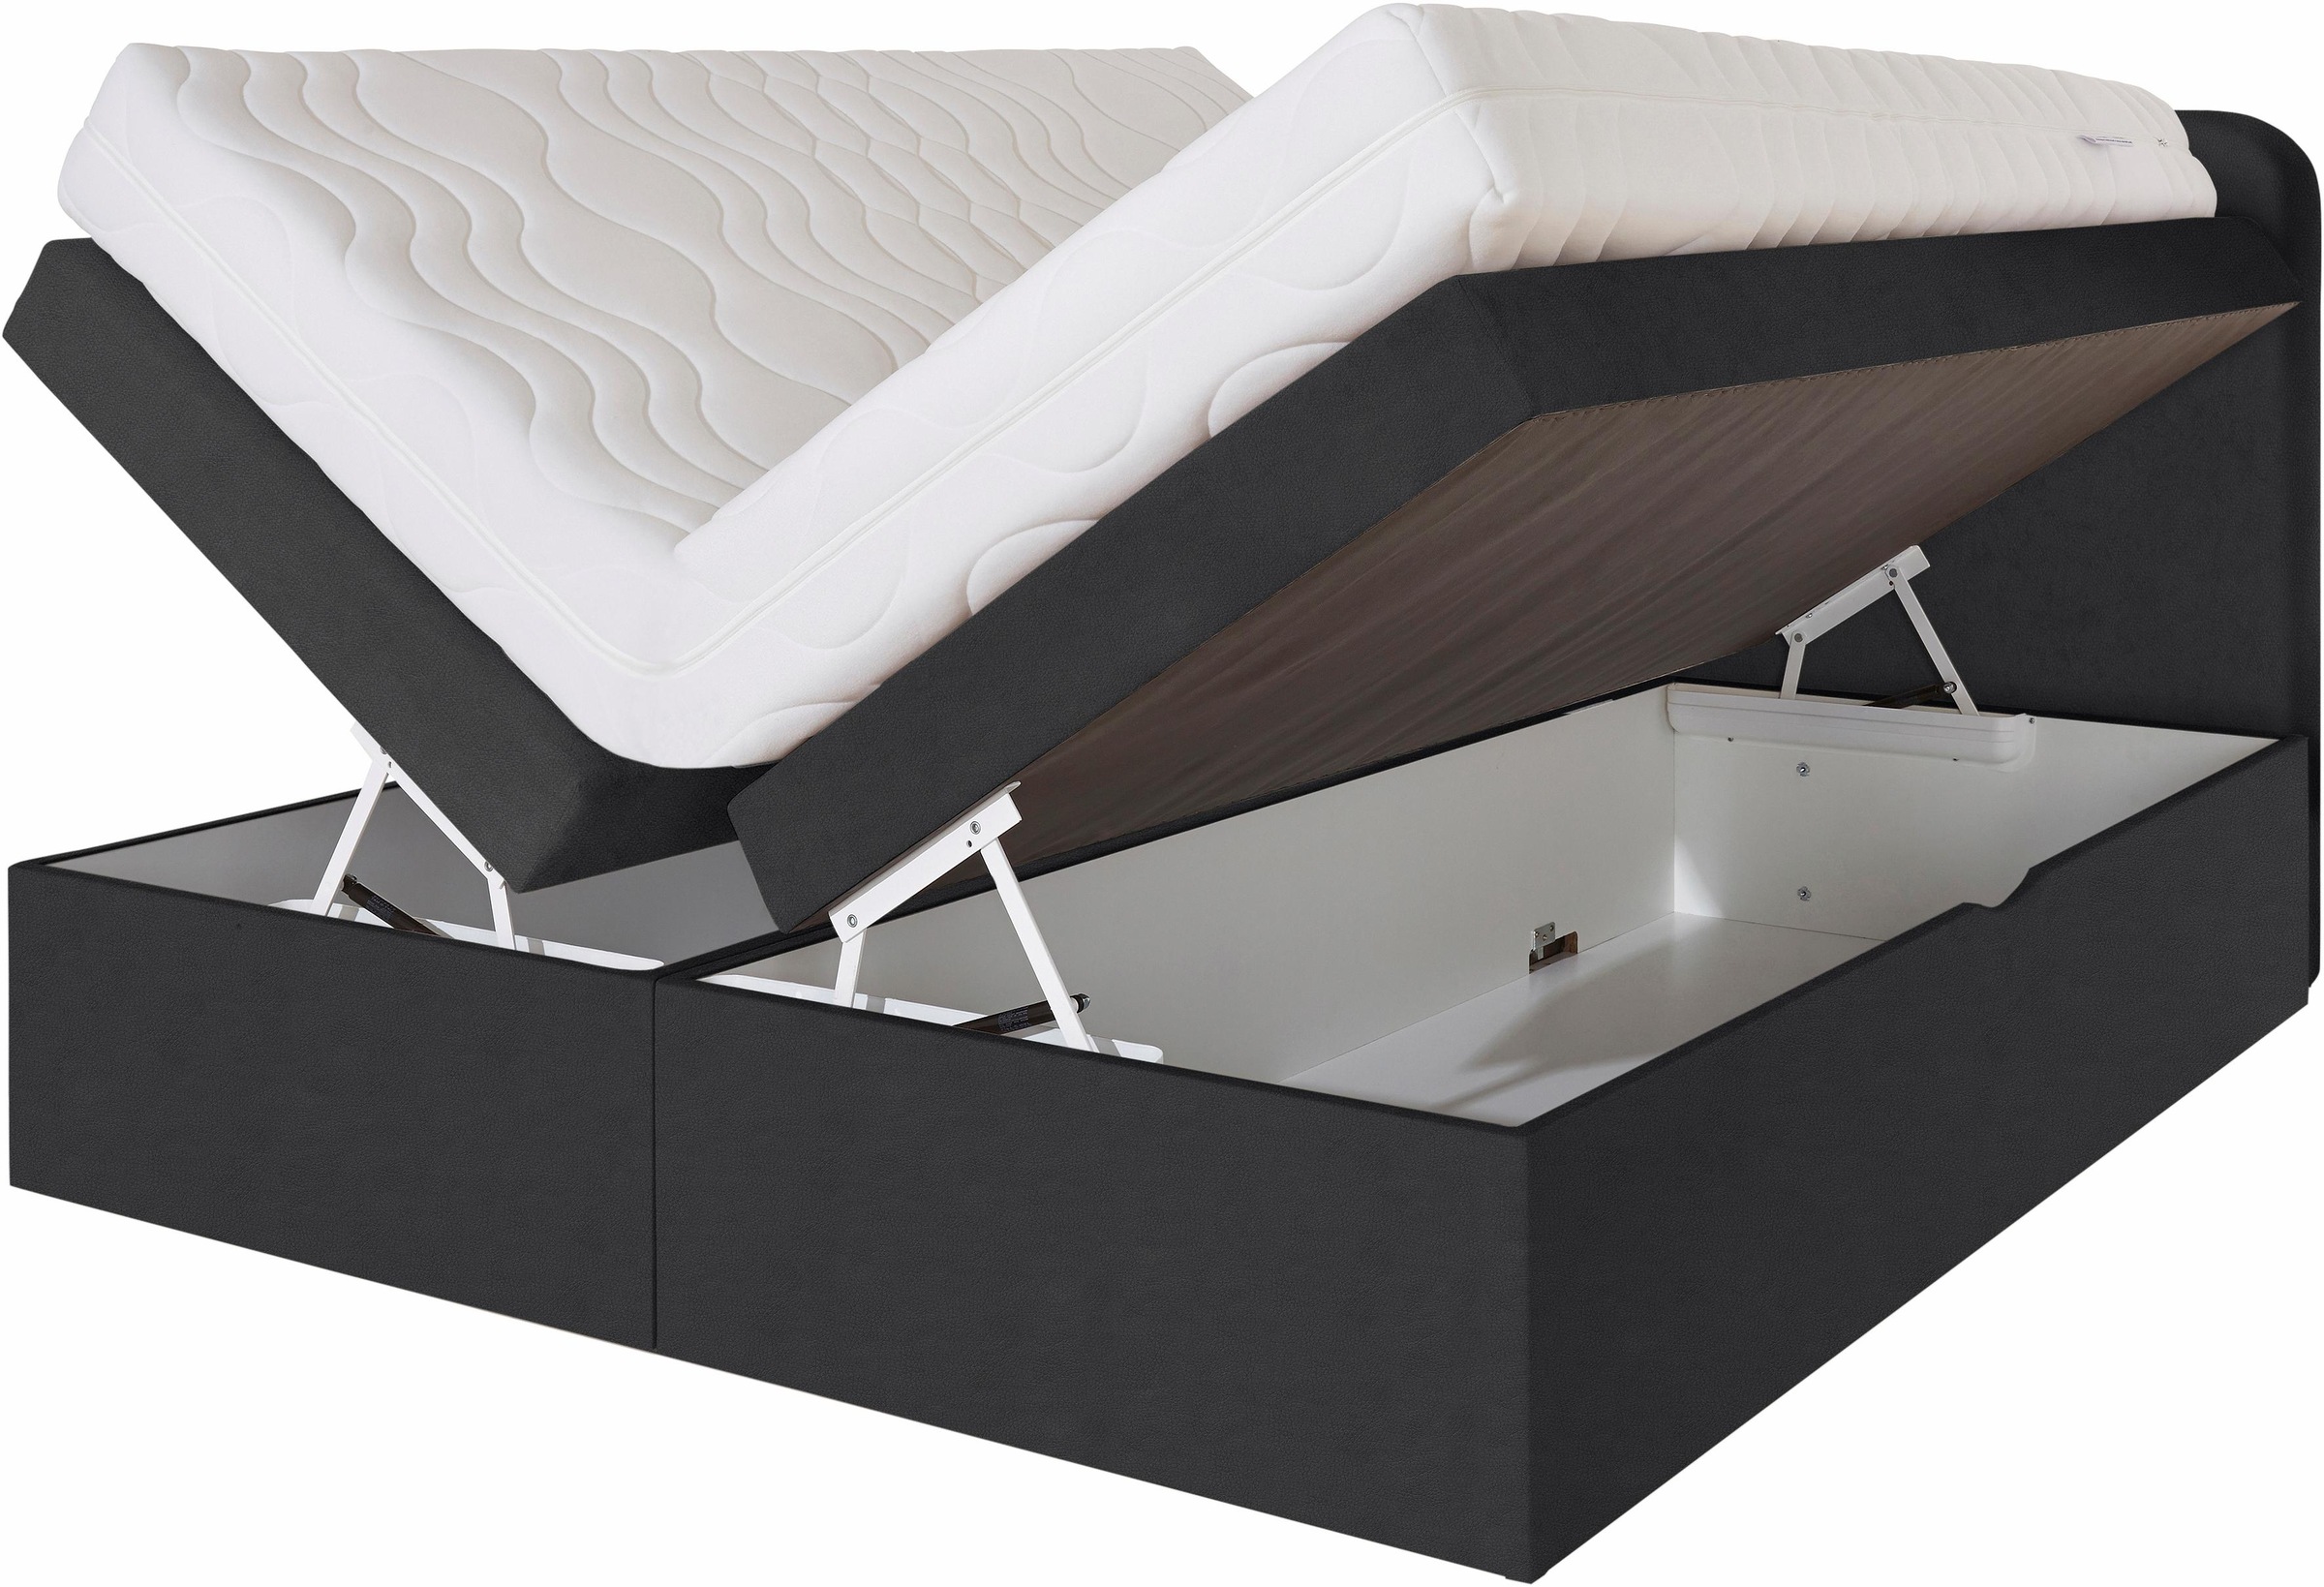 Westfalia Schlafkomfort Boxspringbett, wahlweise mit Bettkasten und 2 Matratzenqualitäten